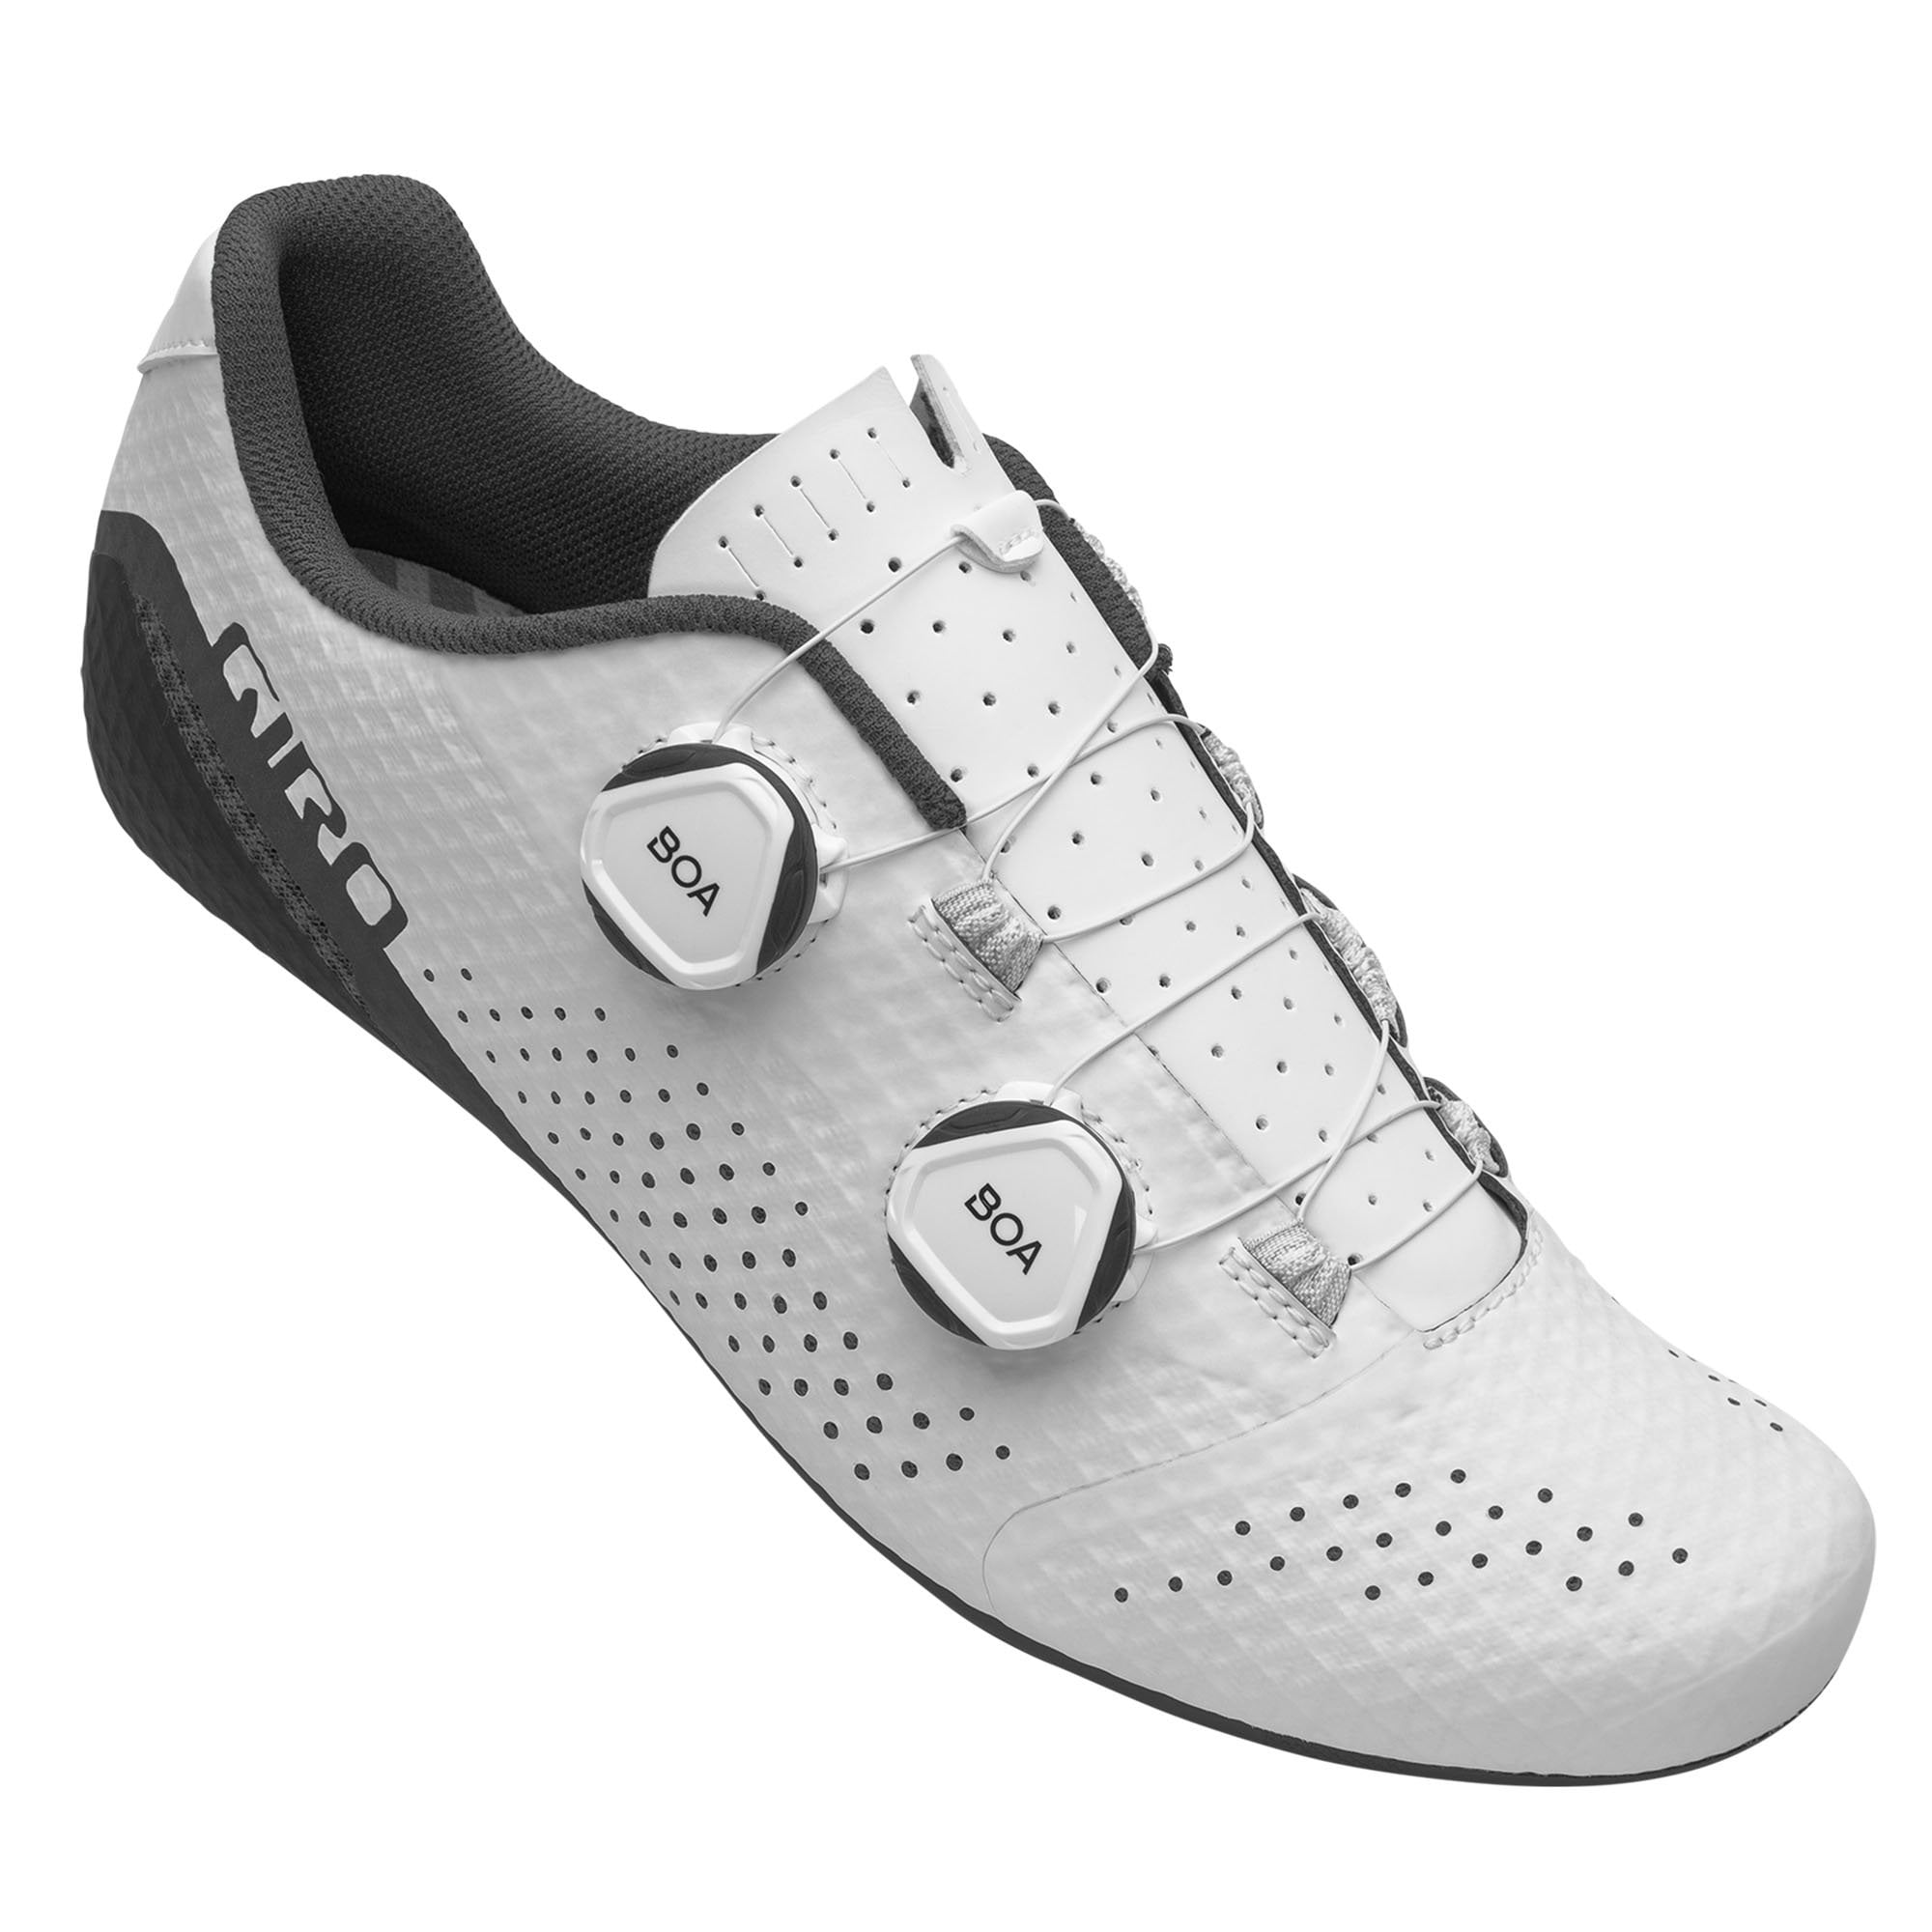 Giro Regime Women's Road Cycling Shoes - White